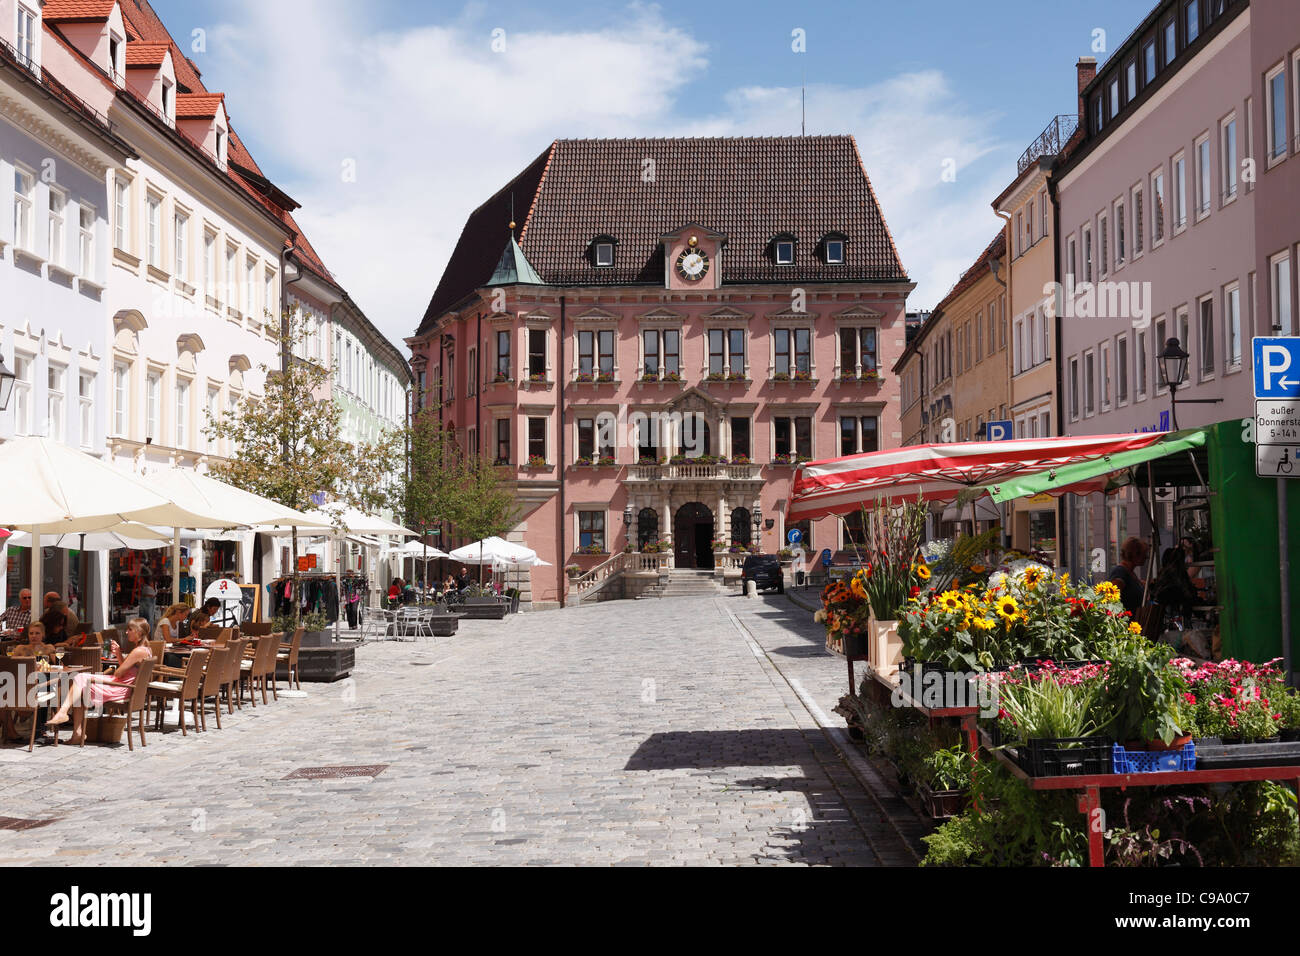 Allemagne, Bavière, souabe, Kaufbeuren, vue sur l'hôtel de ville avec restaurant et boutique de fleur Banque D'Images